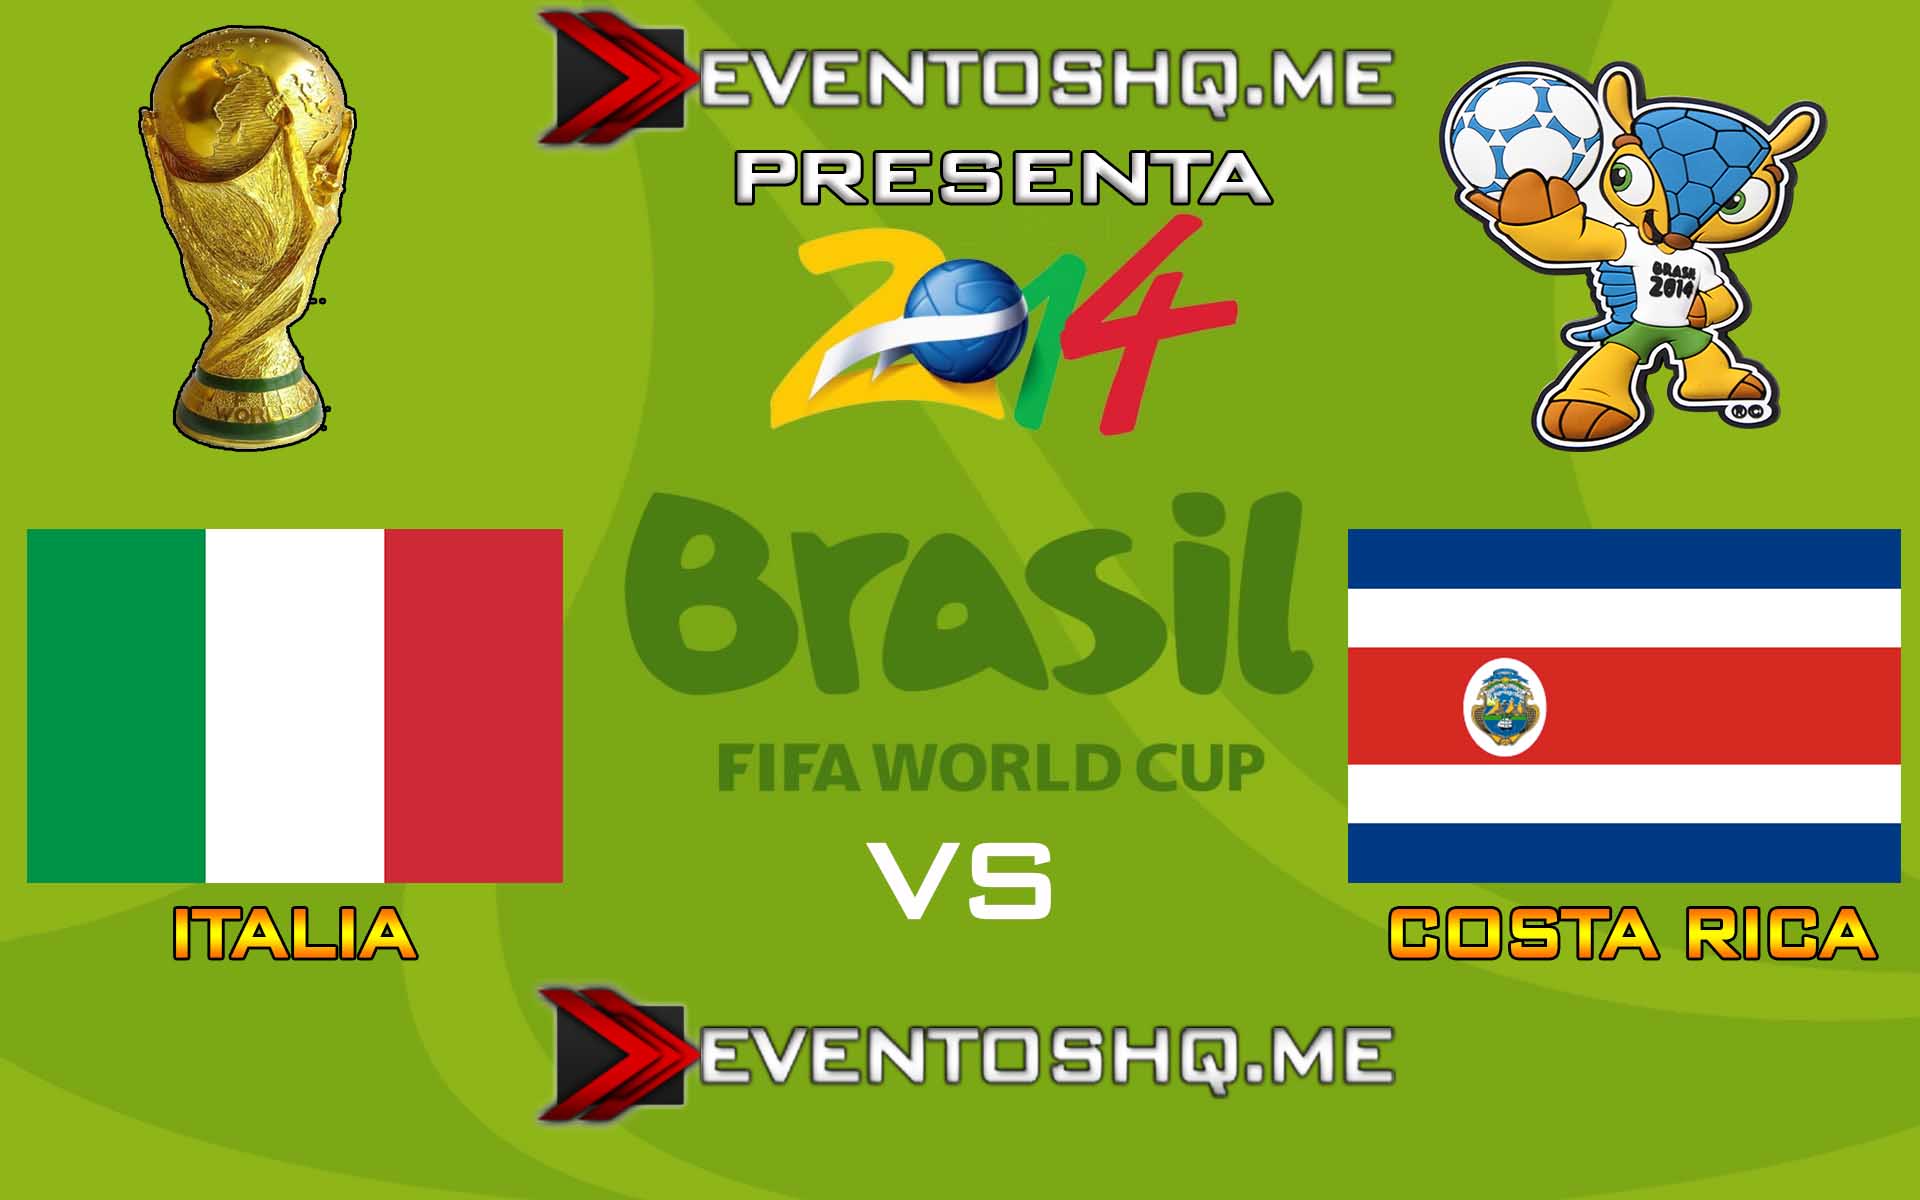 Ver en Vivo Italia vs Costa Rica Mundial Brasil 2014 www.eventoshq.me